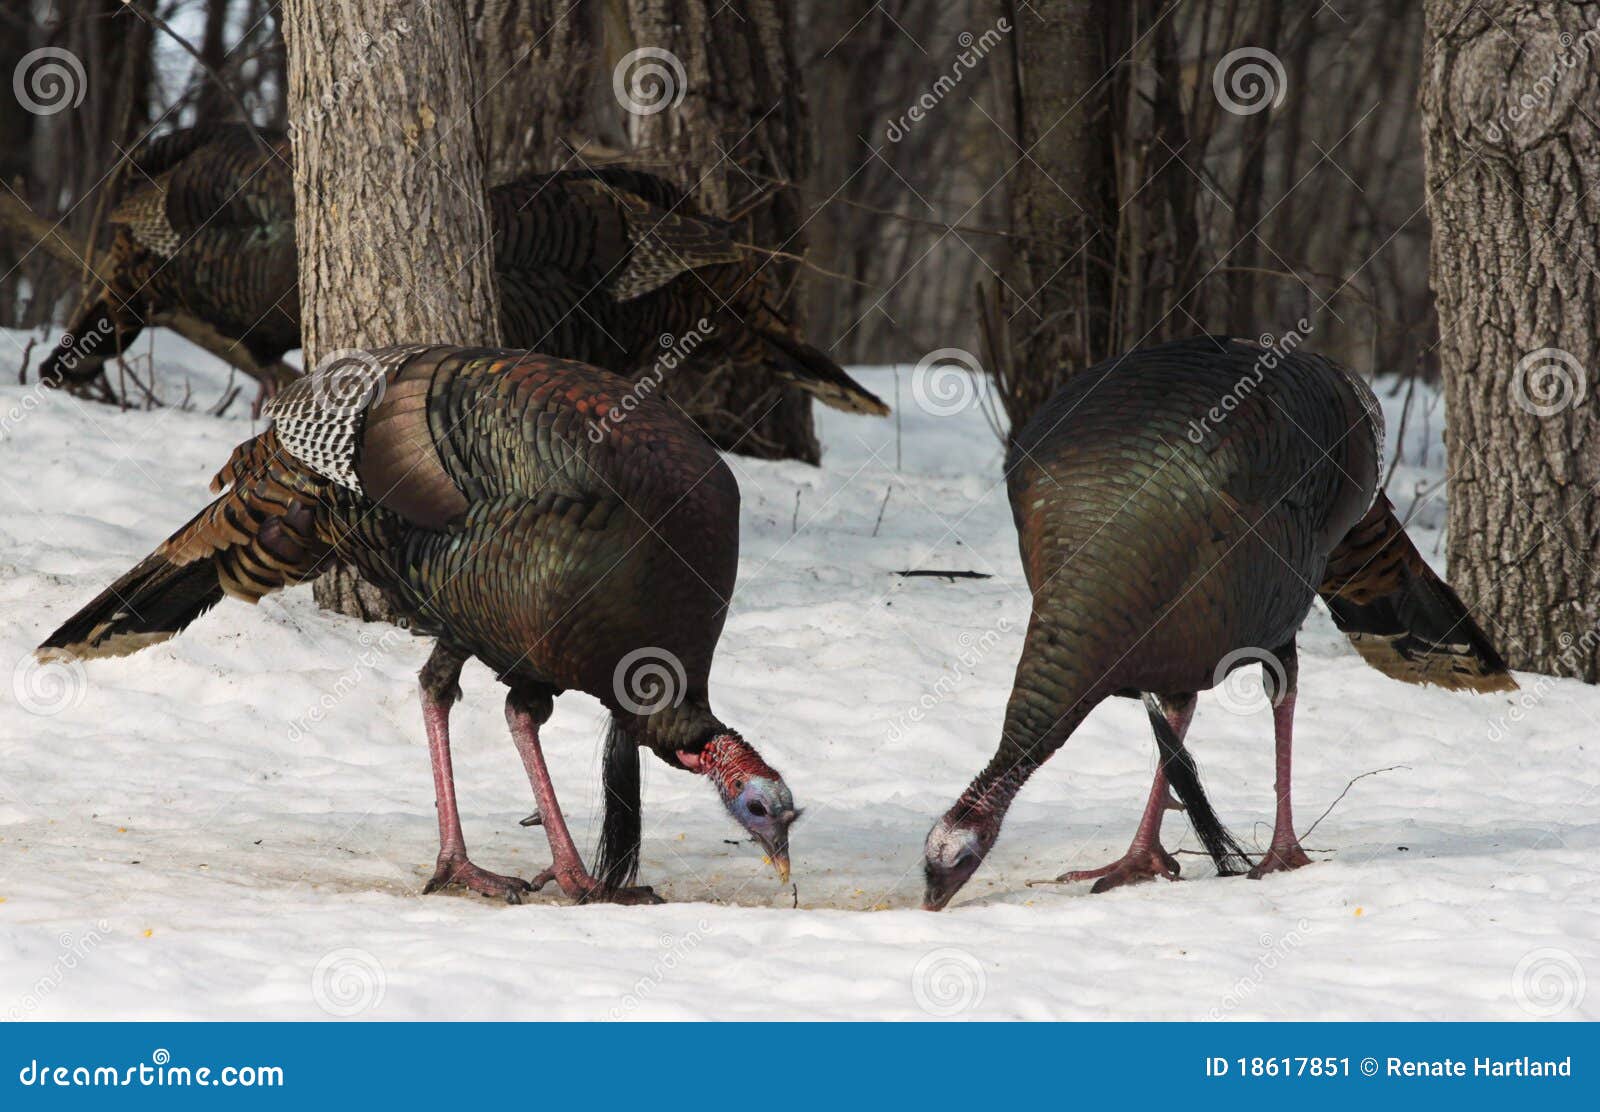 wild turkeys